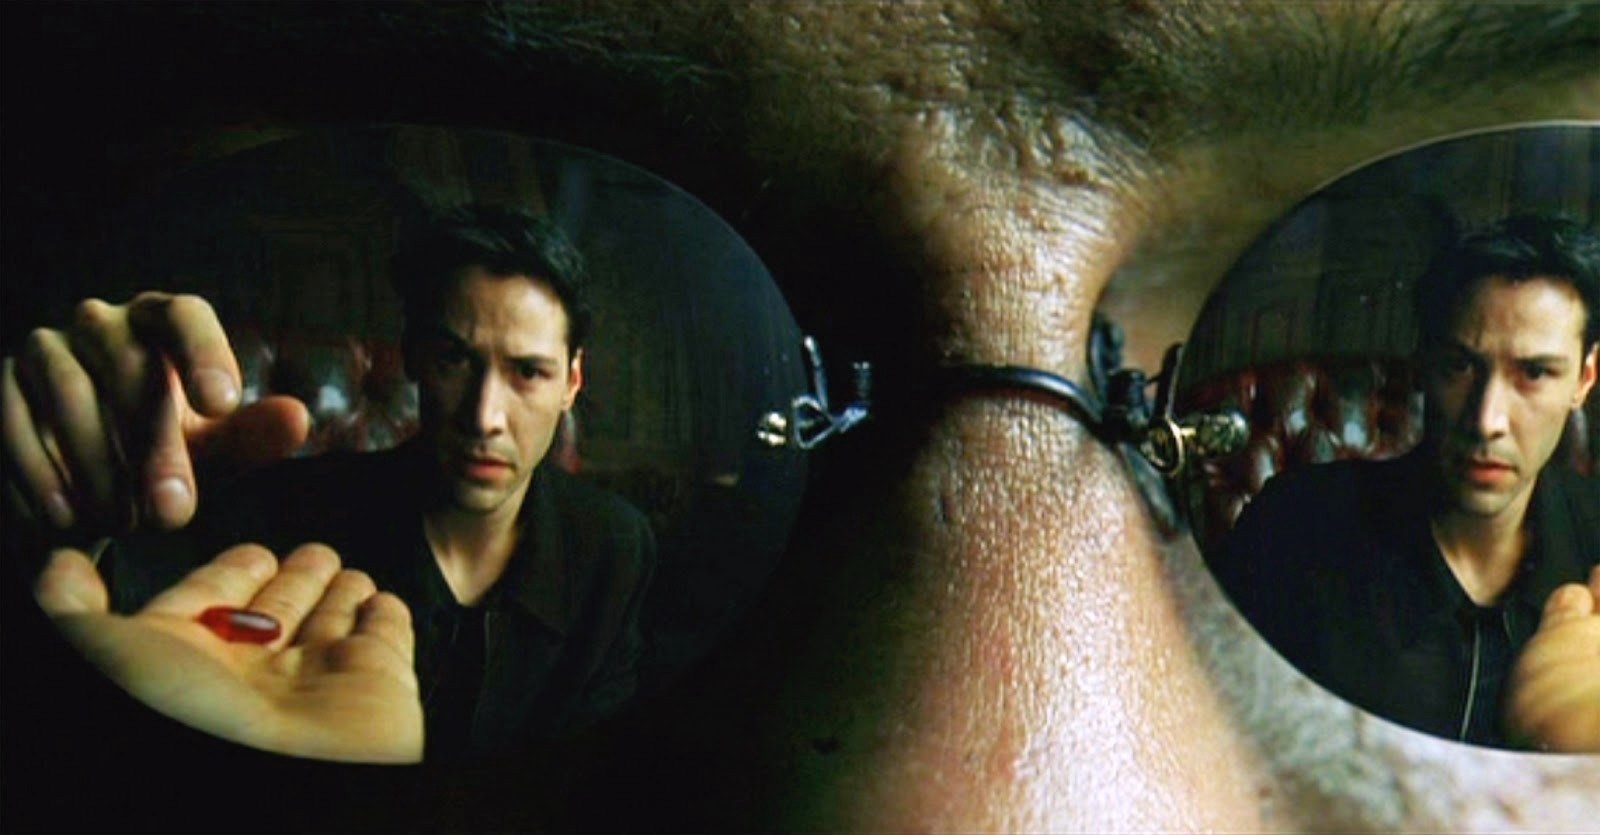 Ma trận - The Matrix (1999)